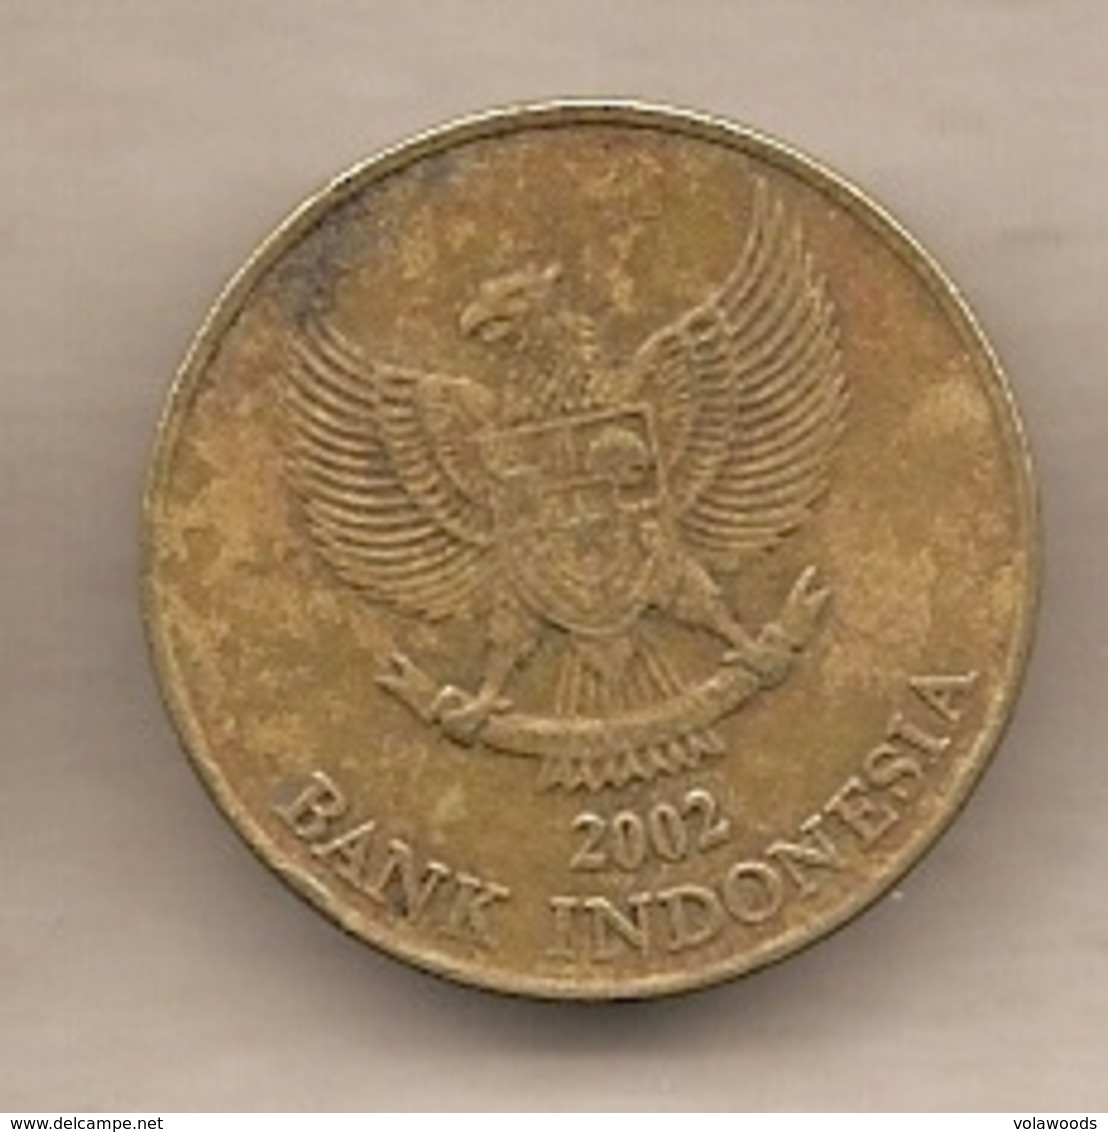 Indonesia - Moneta Circolata Da 500 Rupie - 2002 - Indonesia